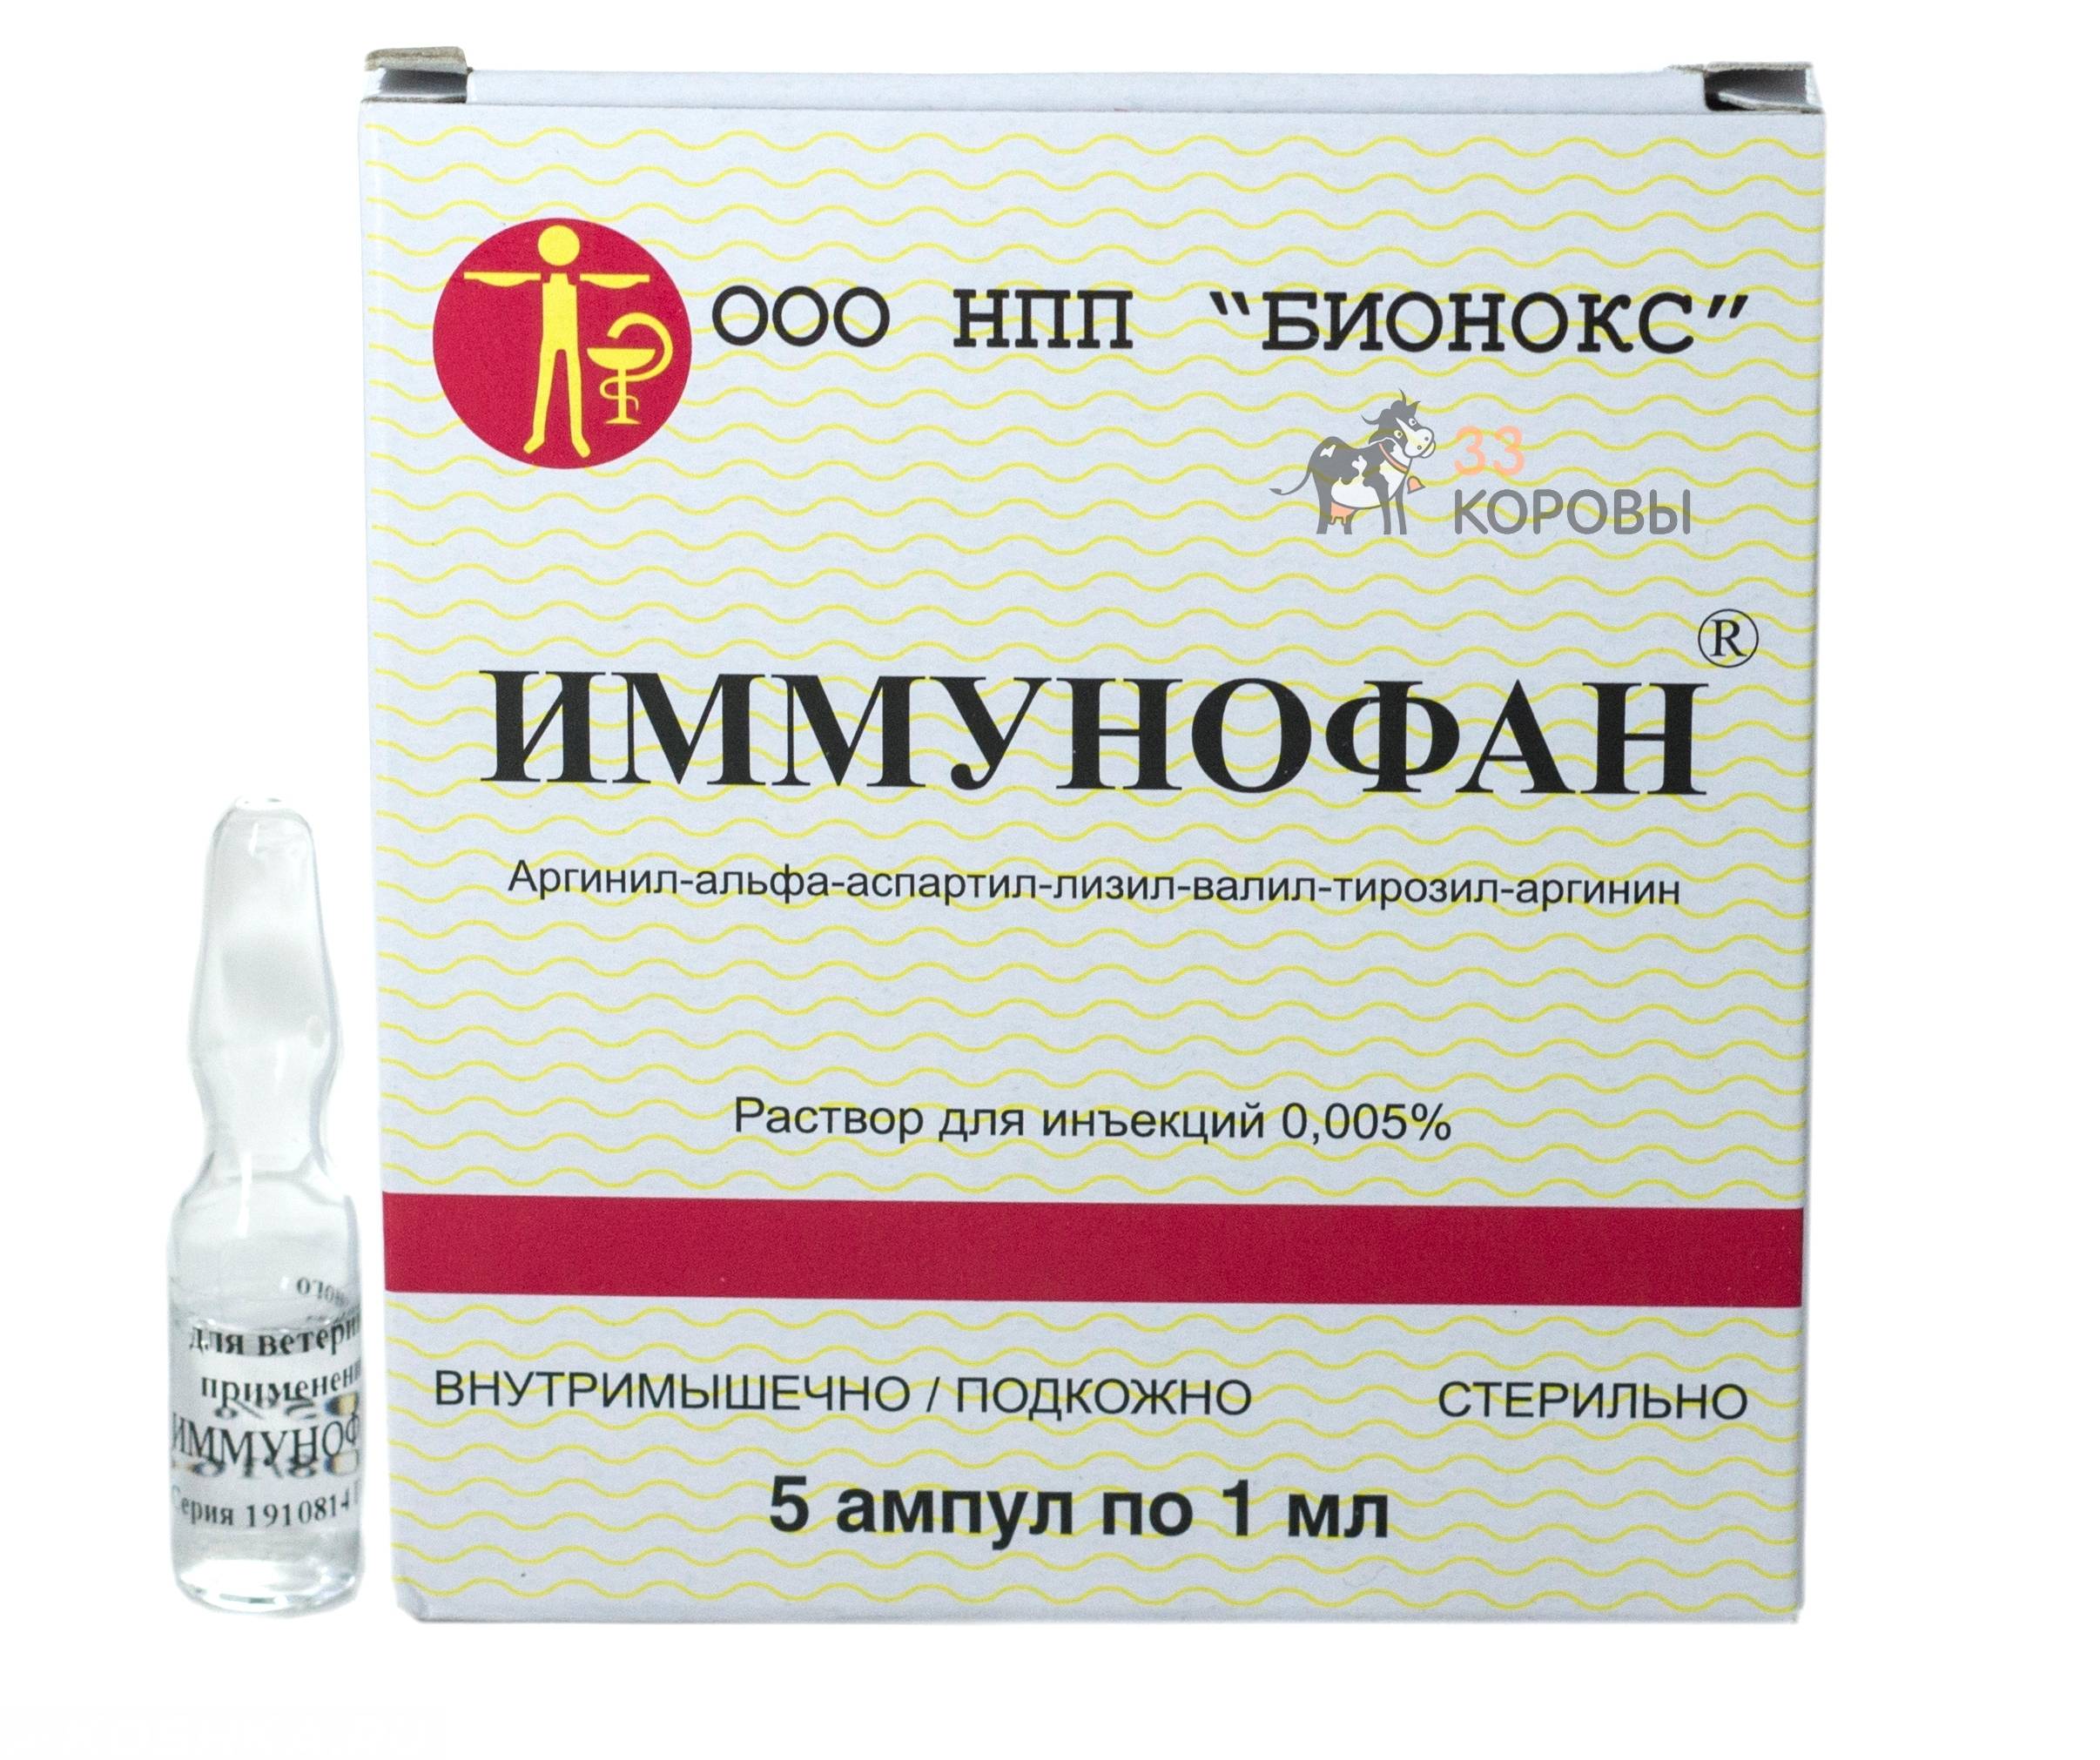 Иммунофан – хороший иммуностимулятор для животных